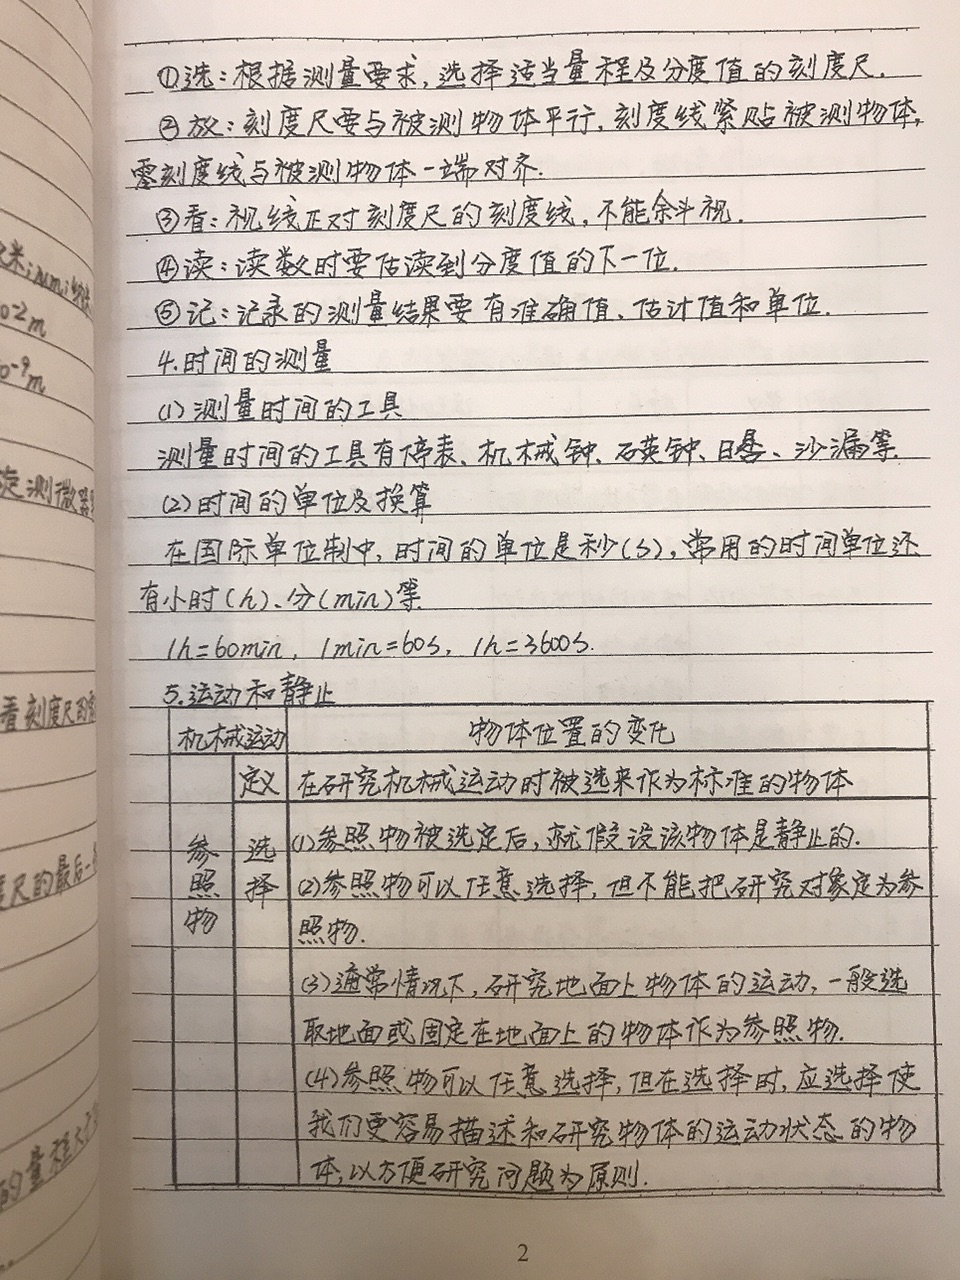 初中/高中 学霸笔记学习资料手写笔记高清打印版